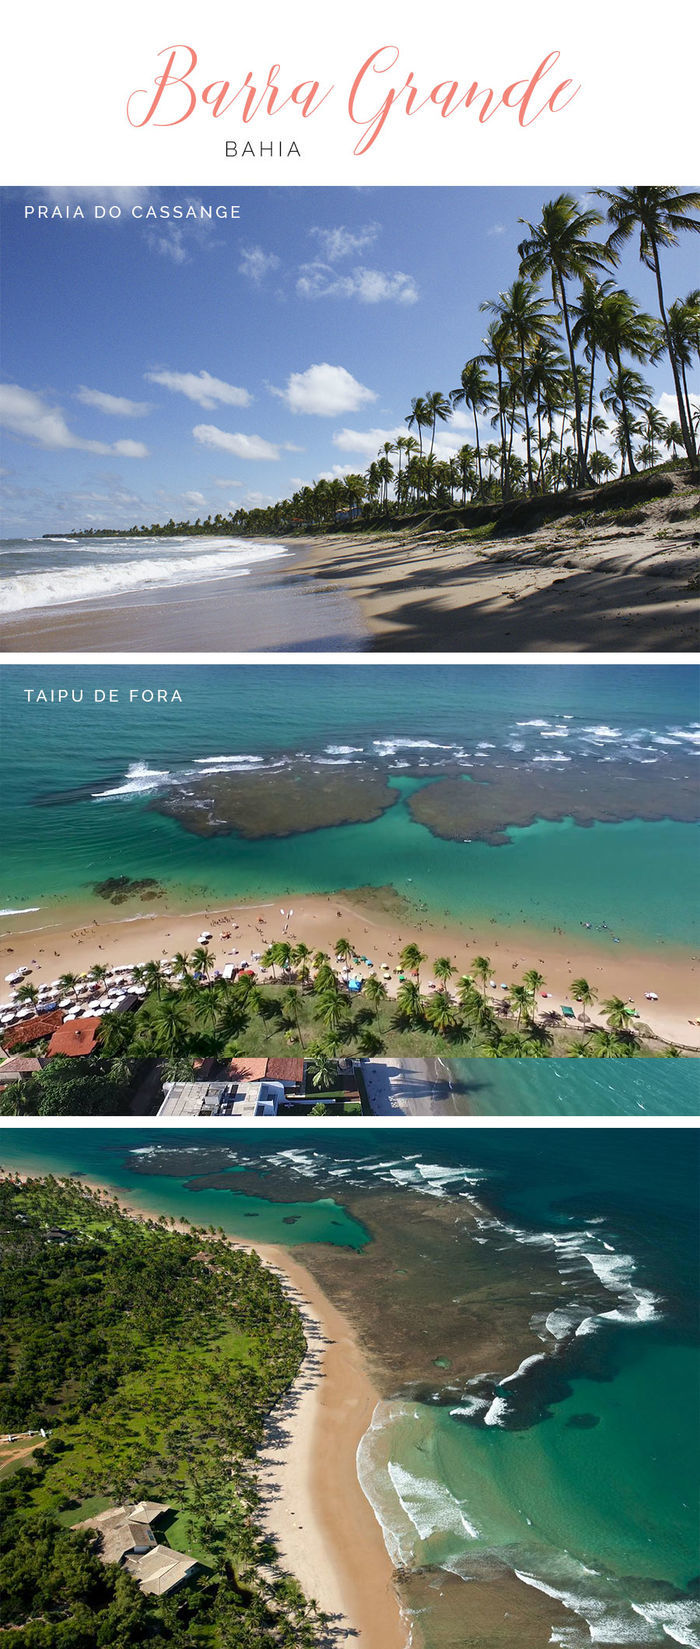 Destinos de praia em alta para o verão - Barra Grande - Bahia